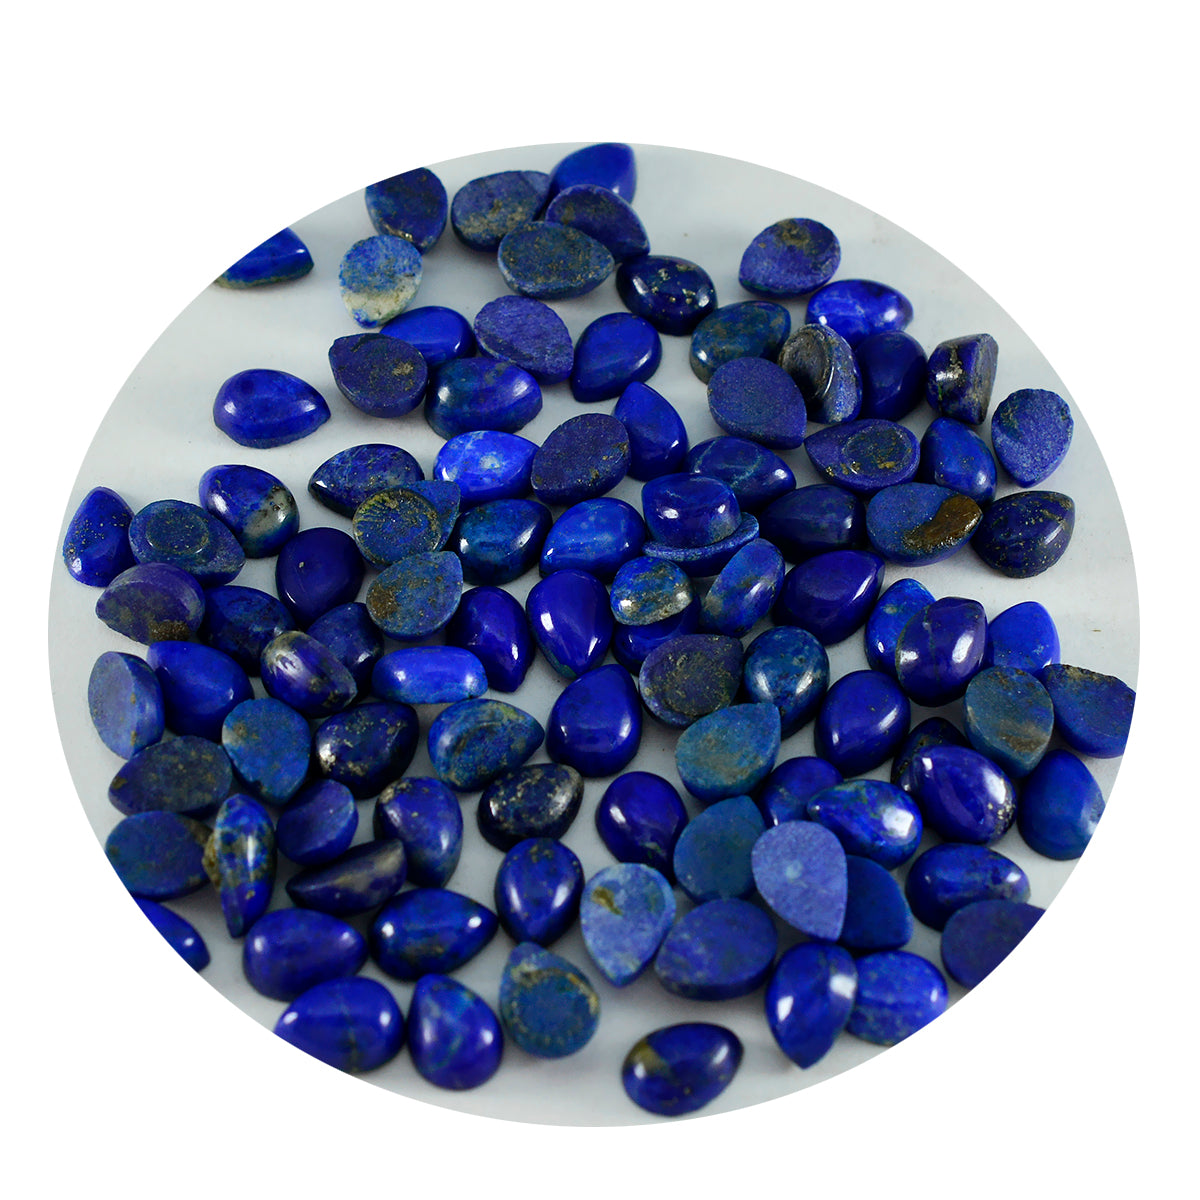 riyogems 1 шт. синий лазурит кабошон 3x5 мм грушевидной формы камень качества ААА